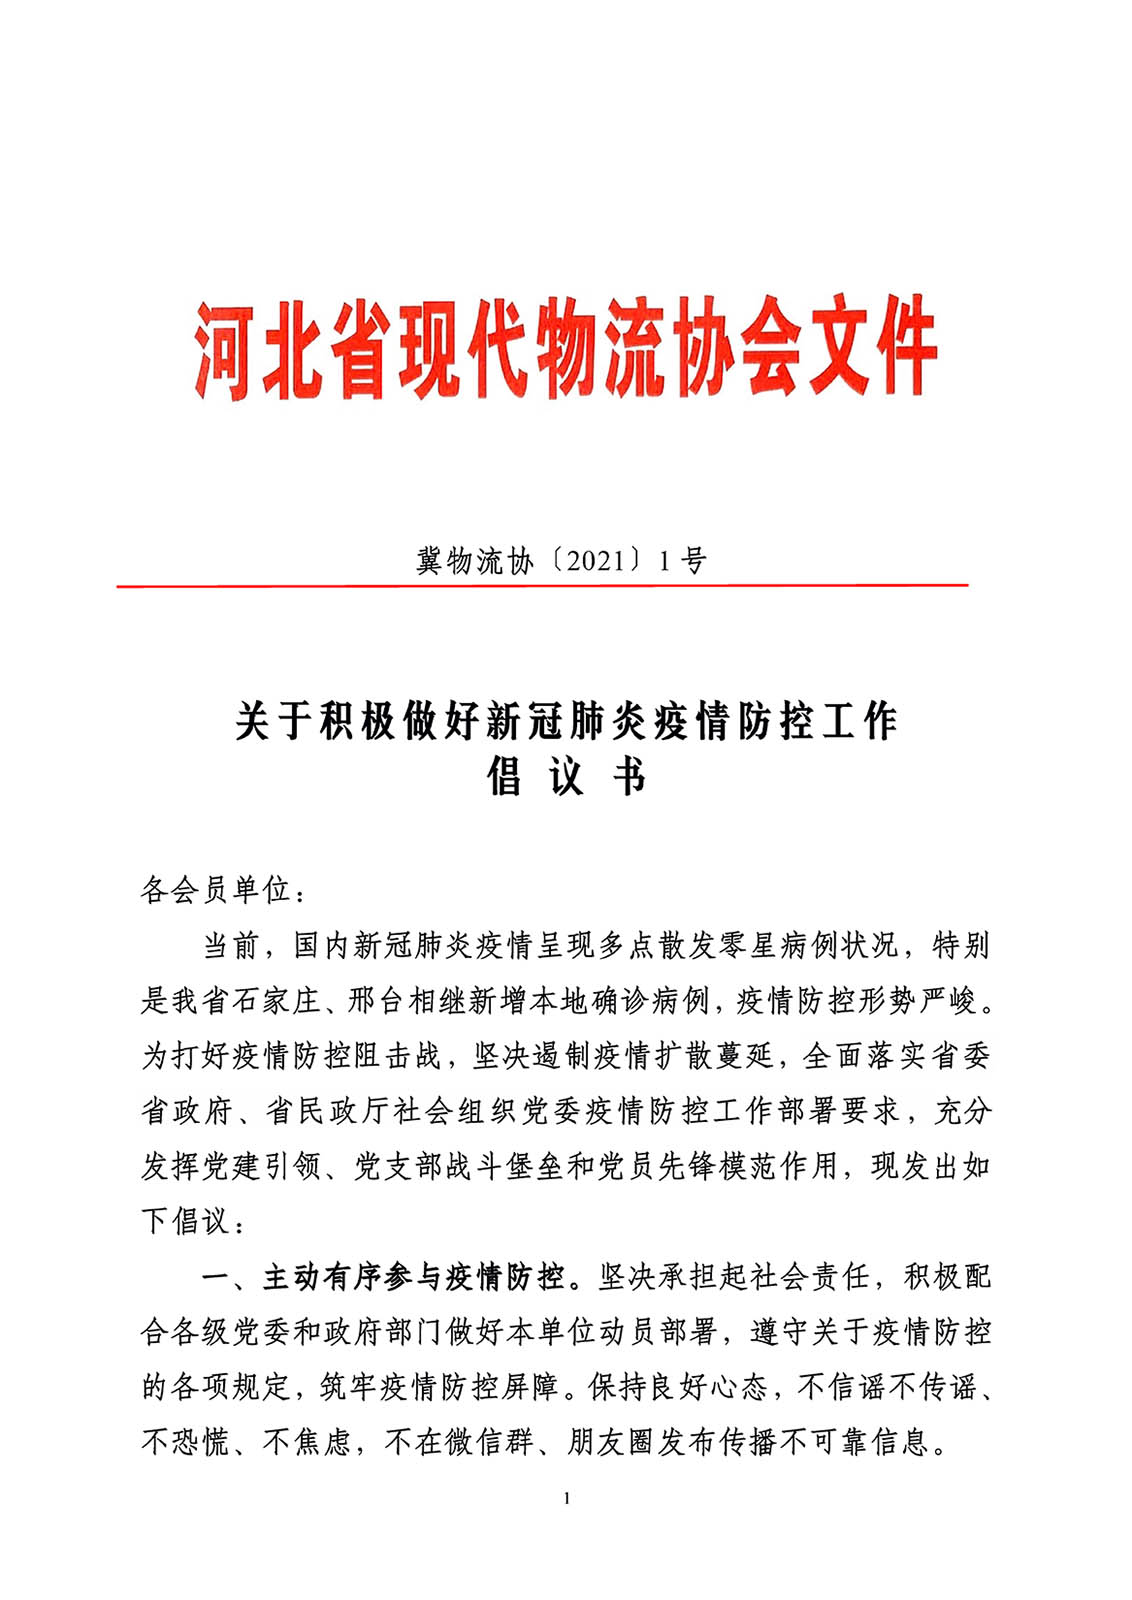 河北省现代物流协会关于积极做好新冠肺炎疫情防控工作倡议书